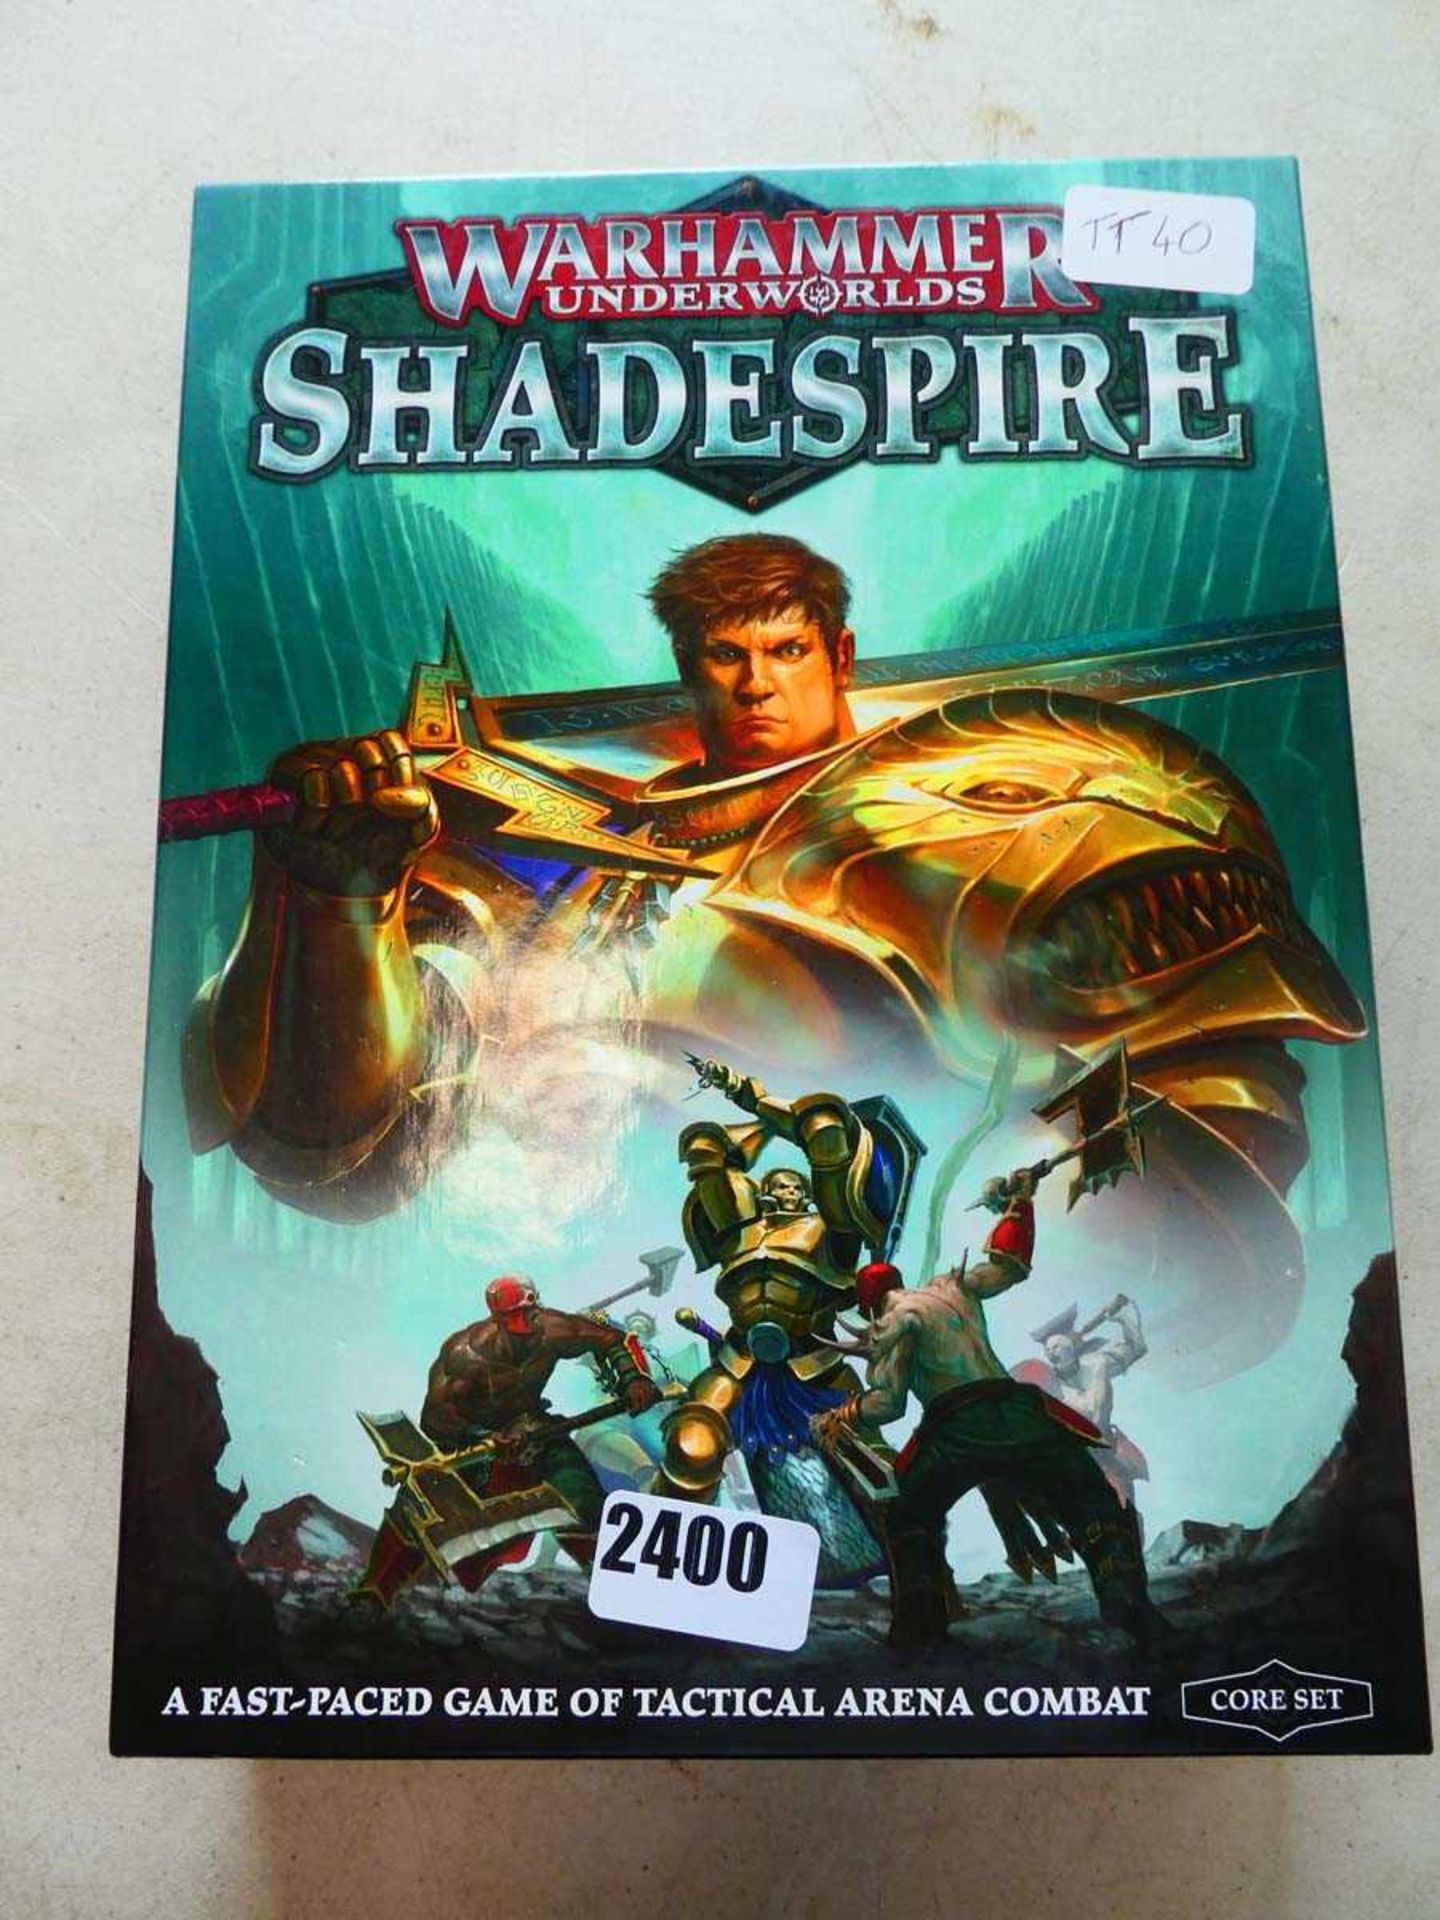 Warhammer Underworlds: Shadespire boxed game